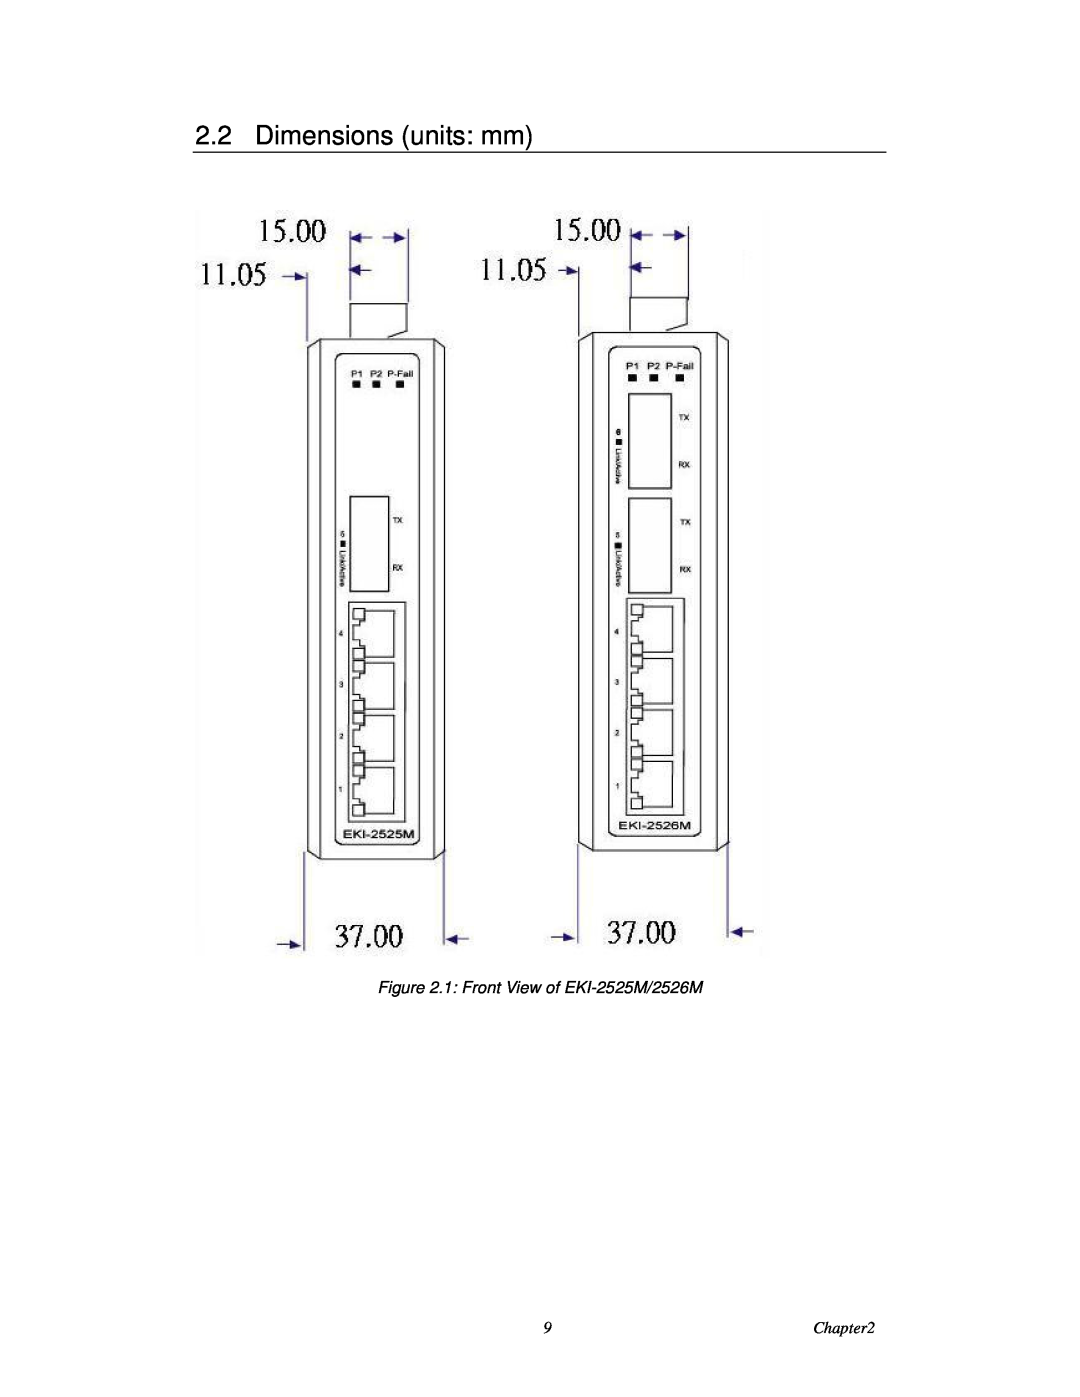 Advantech EKI-2526M user manual Dimensions units mm, 1 Front View of EKI-2525M/2526M 